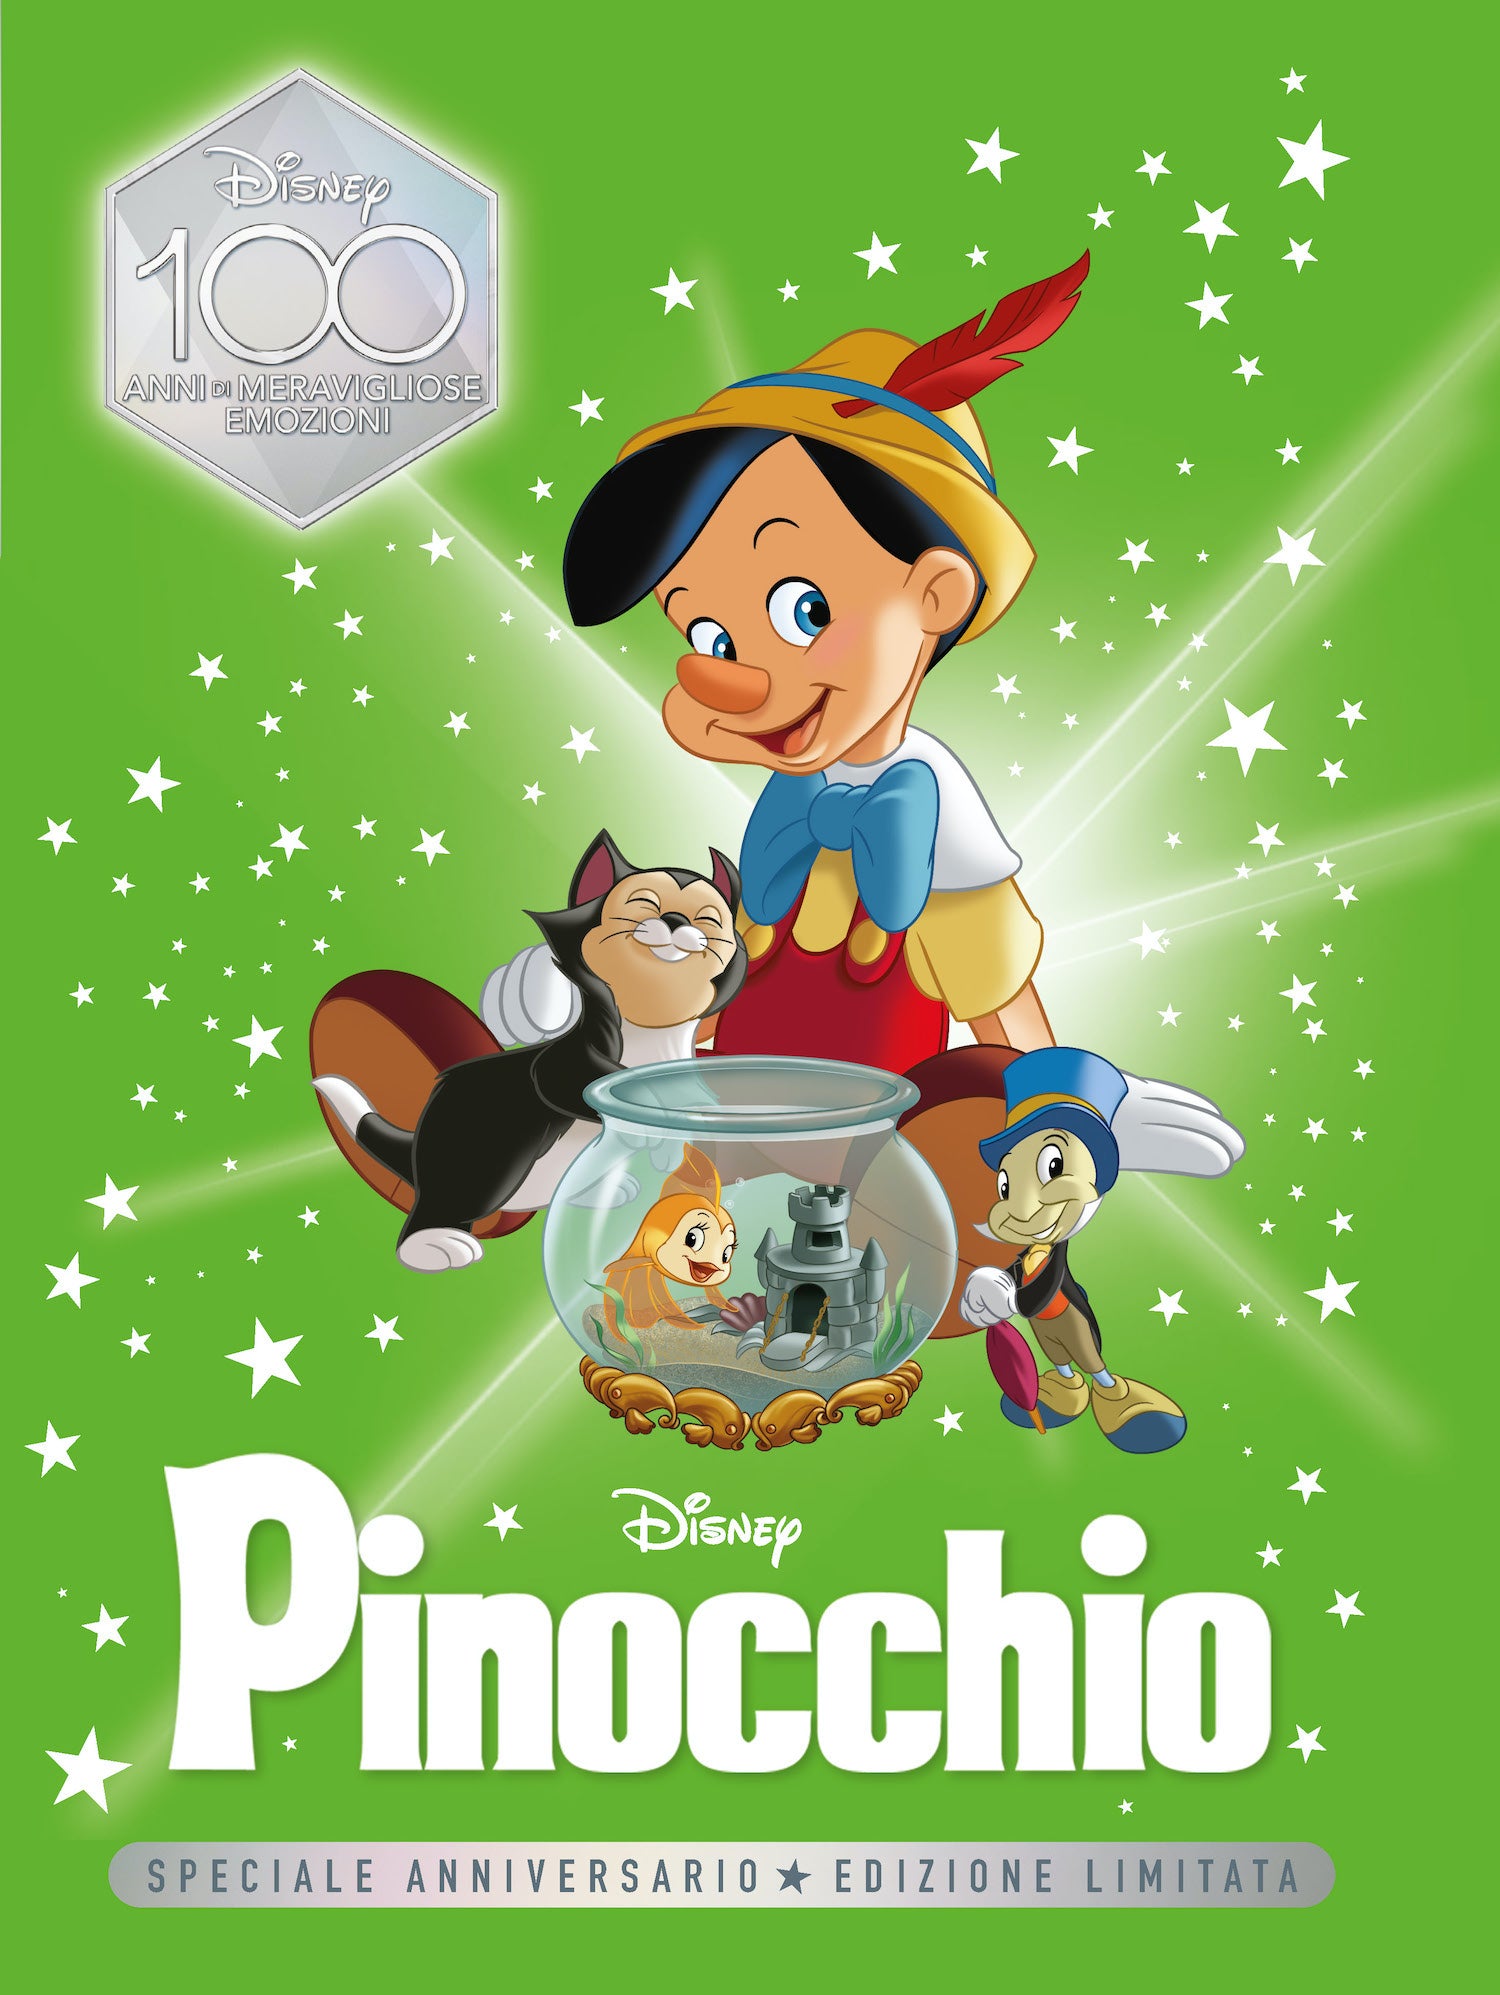 Pinocchio Speciale Anniversario Edizione limitata. Disney 100 Anni di meravigliose emozioni